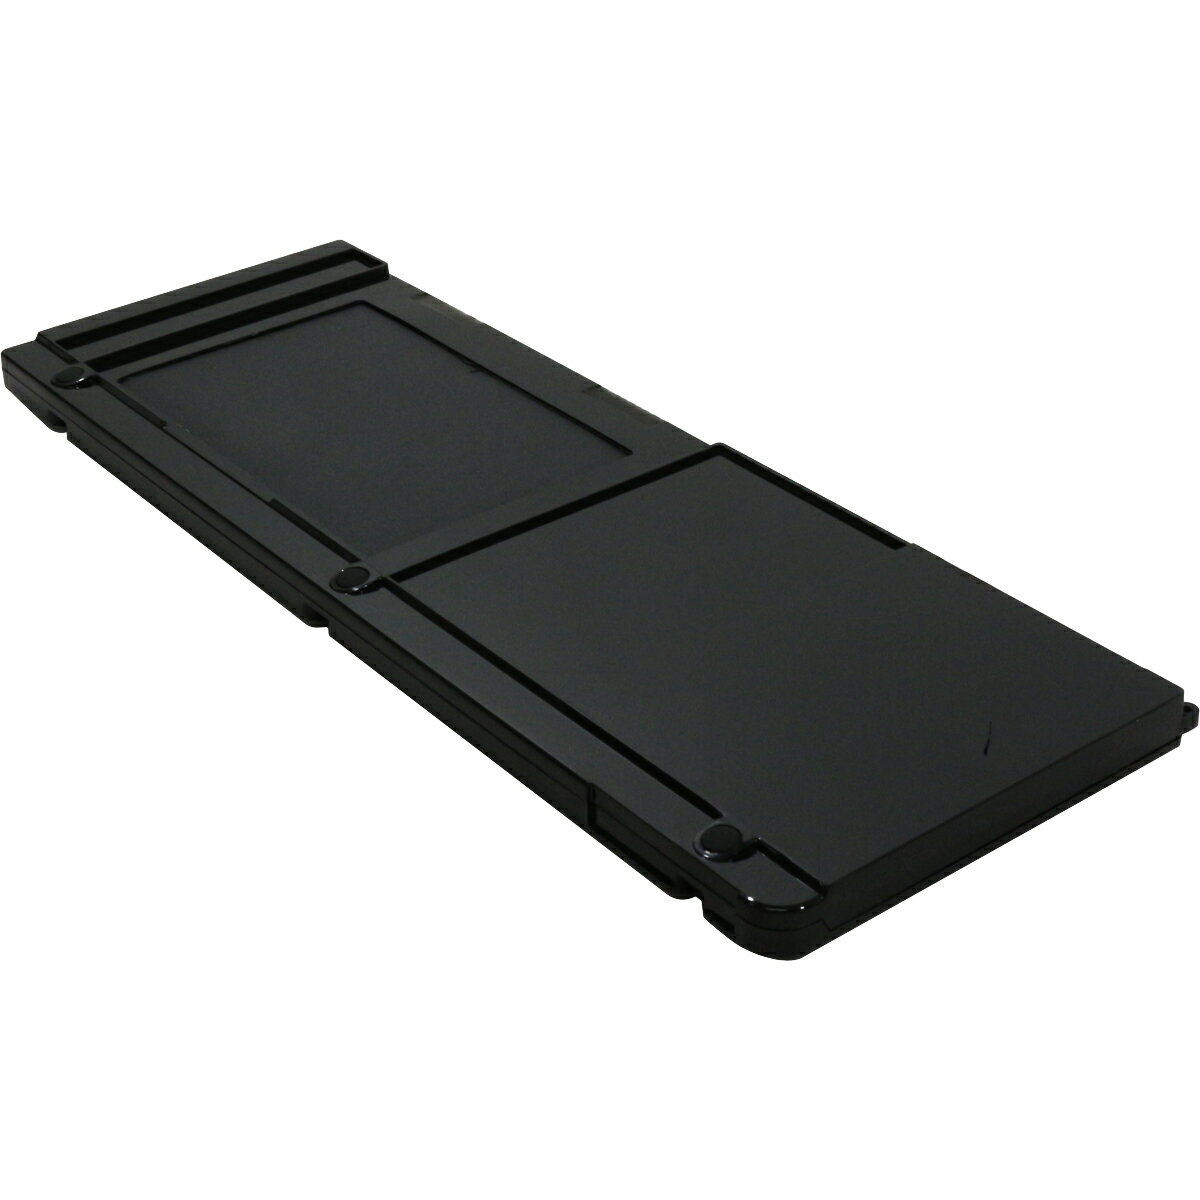 秋葉館 A1309 MacBook Pro Unibody 17インチ（Early2009/Mid2009/Mid2010）用交換バッテリー BT-MBP17u-E09-M10